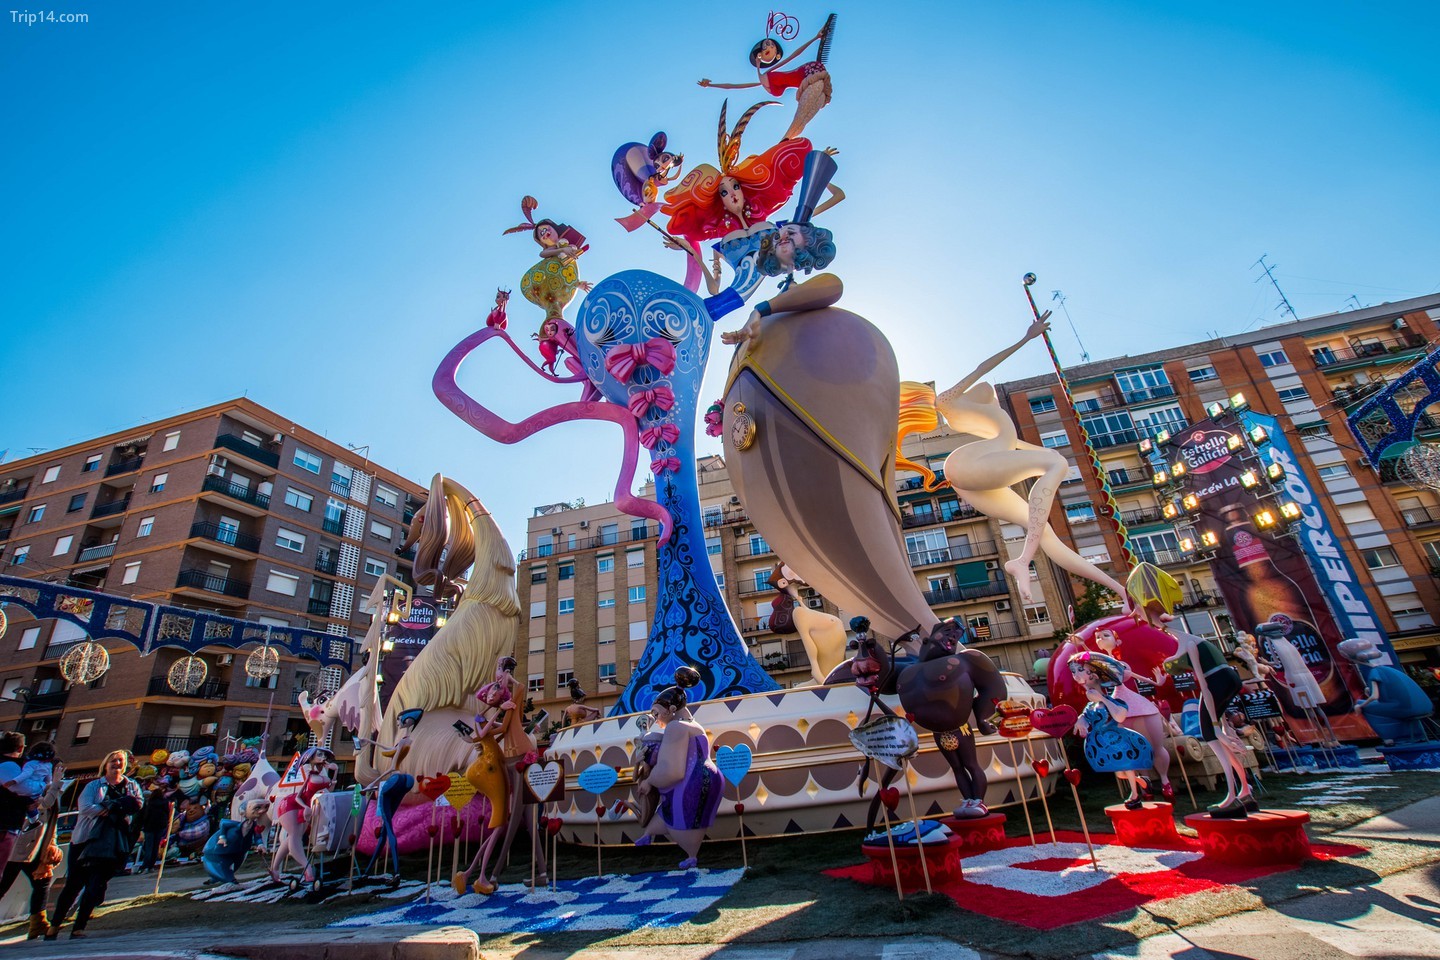 Праздник фигур в Испании - это мероприятие, на котором каждый может насладиться прекрасными скульптурами и атмосферой веселья